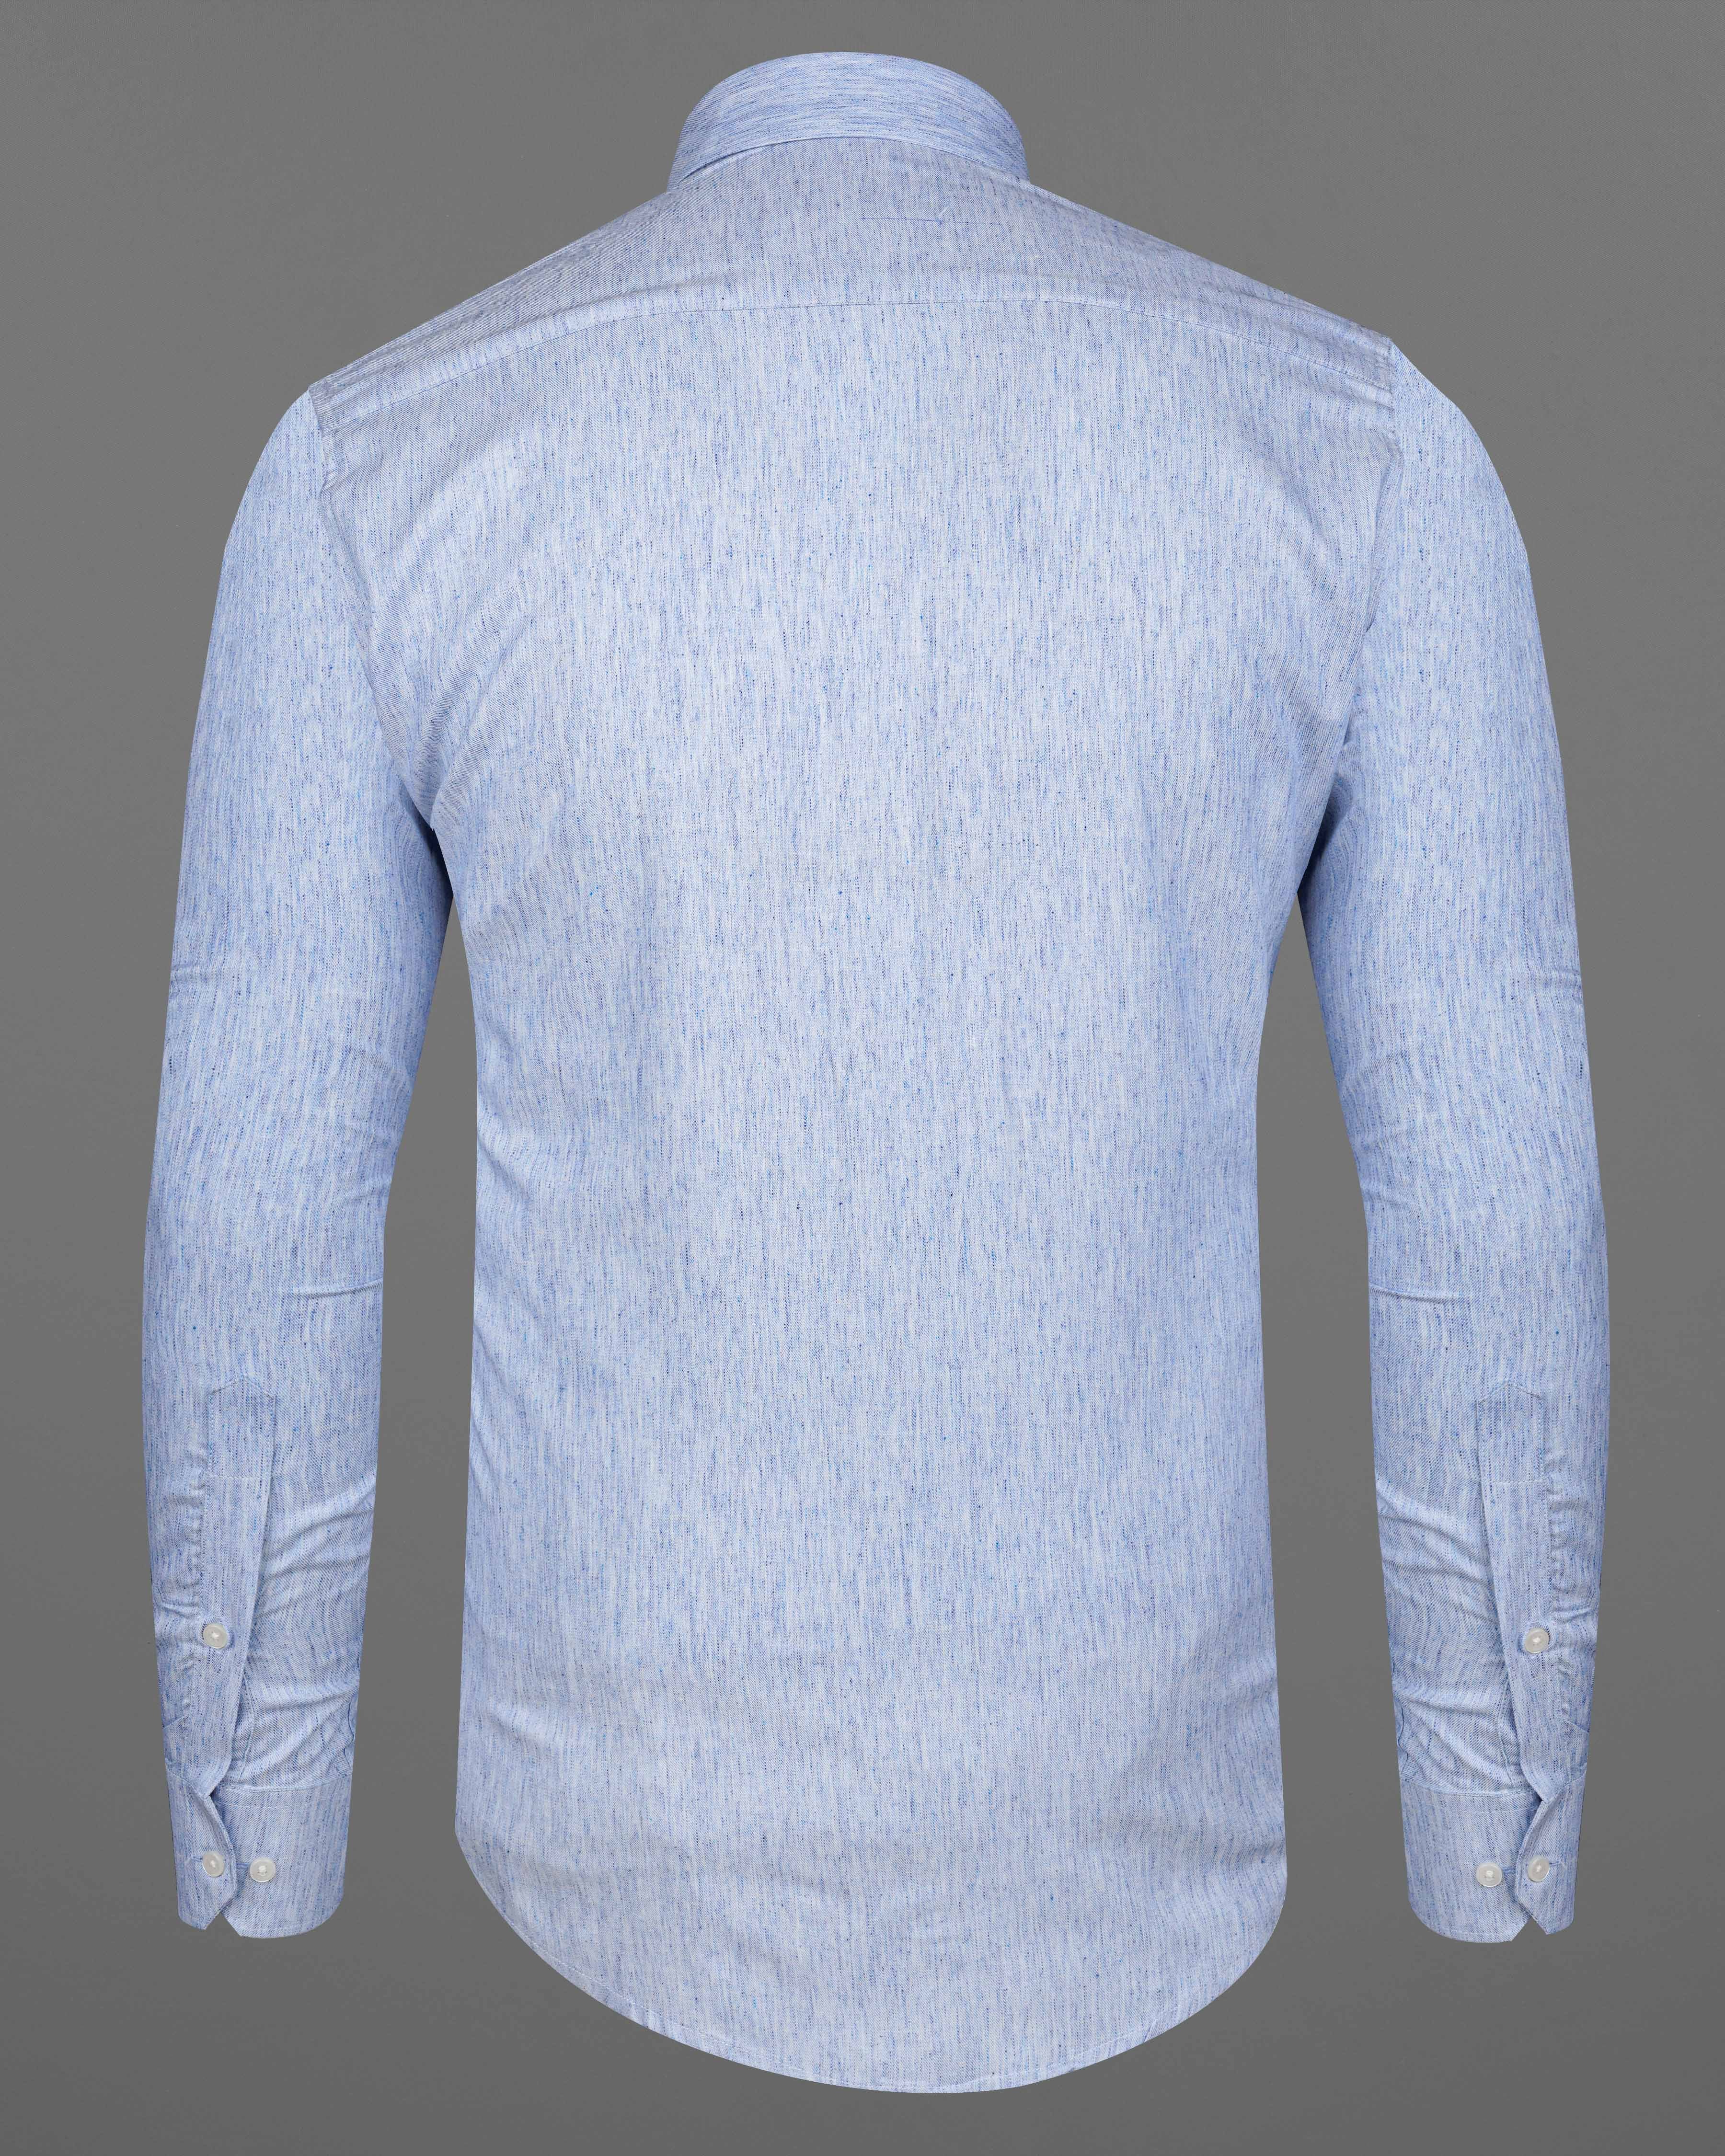 Tropical Blue Chambray Textured Premium Cotton Shirt 8321 -38,8321 -H-38,8321 -39,8321 -H-39,8321 -40,8321 -H-40,8321 -42,8321 -H-42,8321 -44,8321 -H-44,8321 -46,8321 -H-46,8321 -48,8321 -H-48,8321 -50,8321 -H-50,8321 -52,8321 -H-52